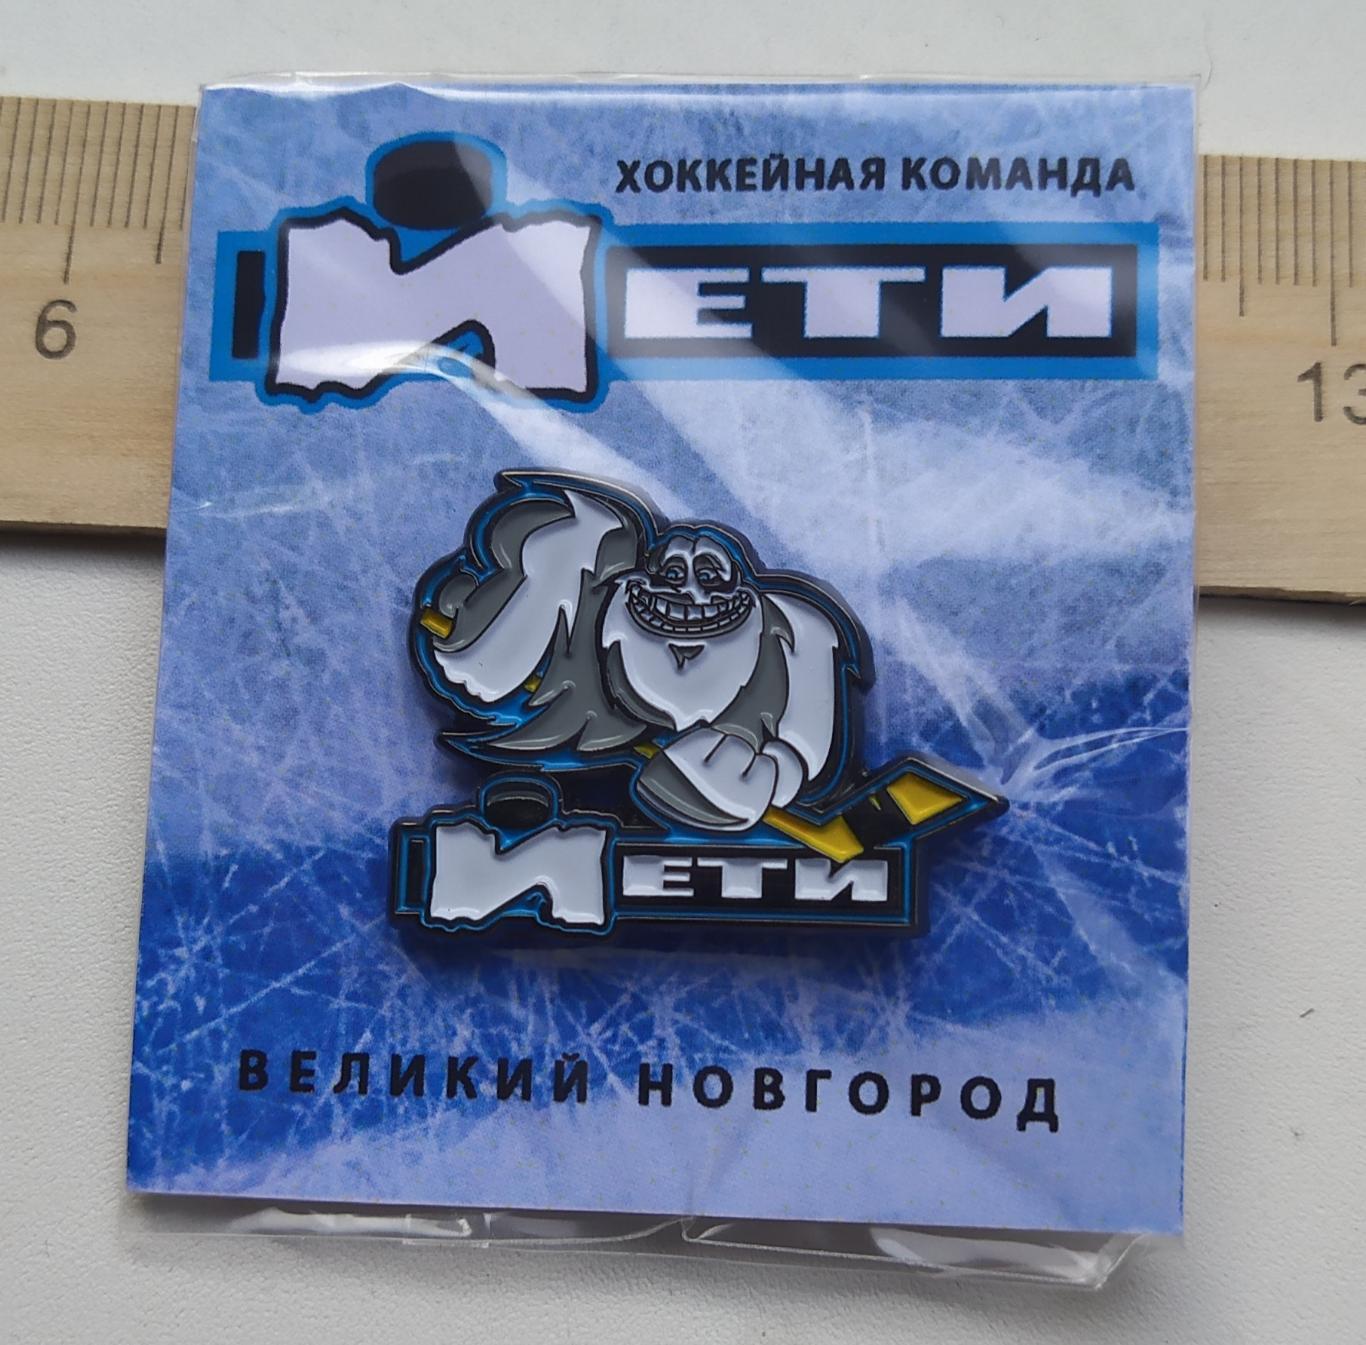 Значок Хоккейной команды Йети Великий Новгород.